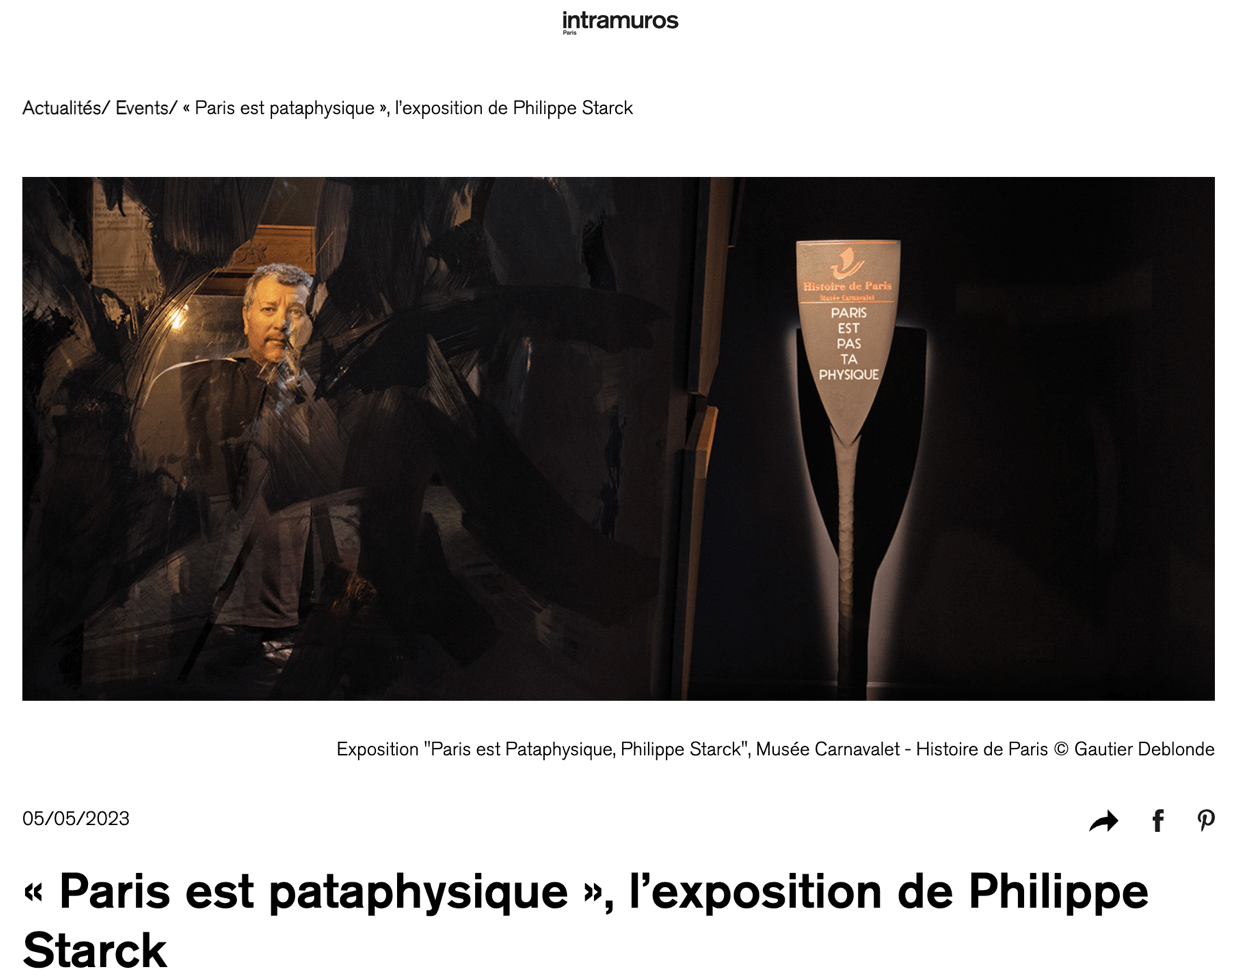 « Paris est pataphysique », l’exposition de Philippe Starck